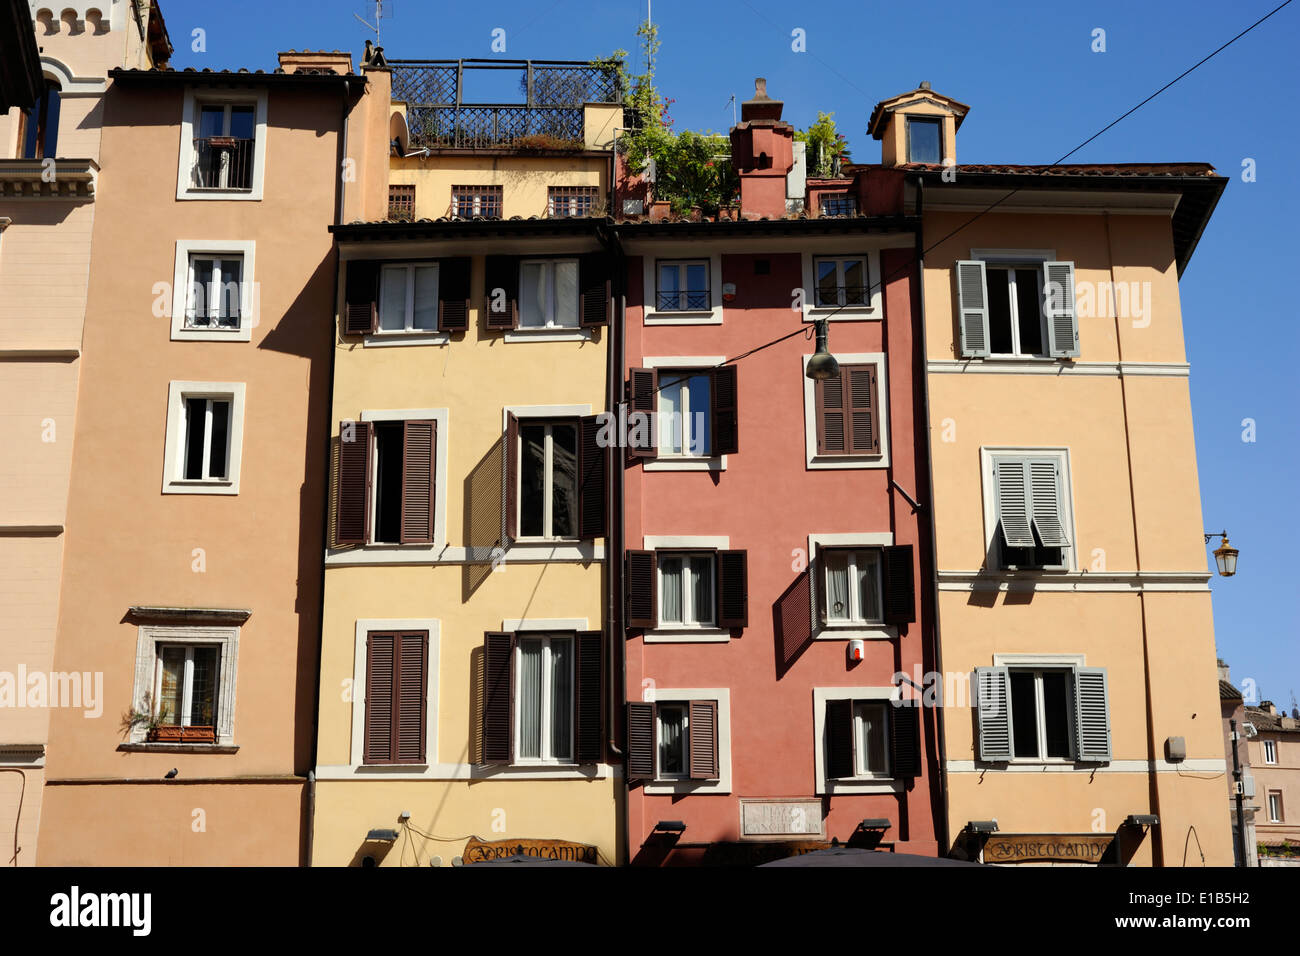 Italie, Rome, bâtiments colorés Banque D'Images